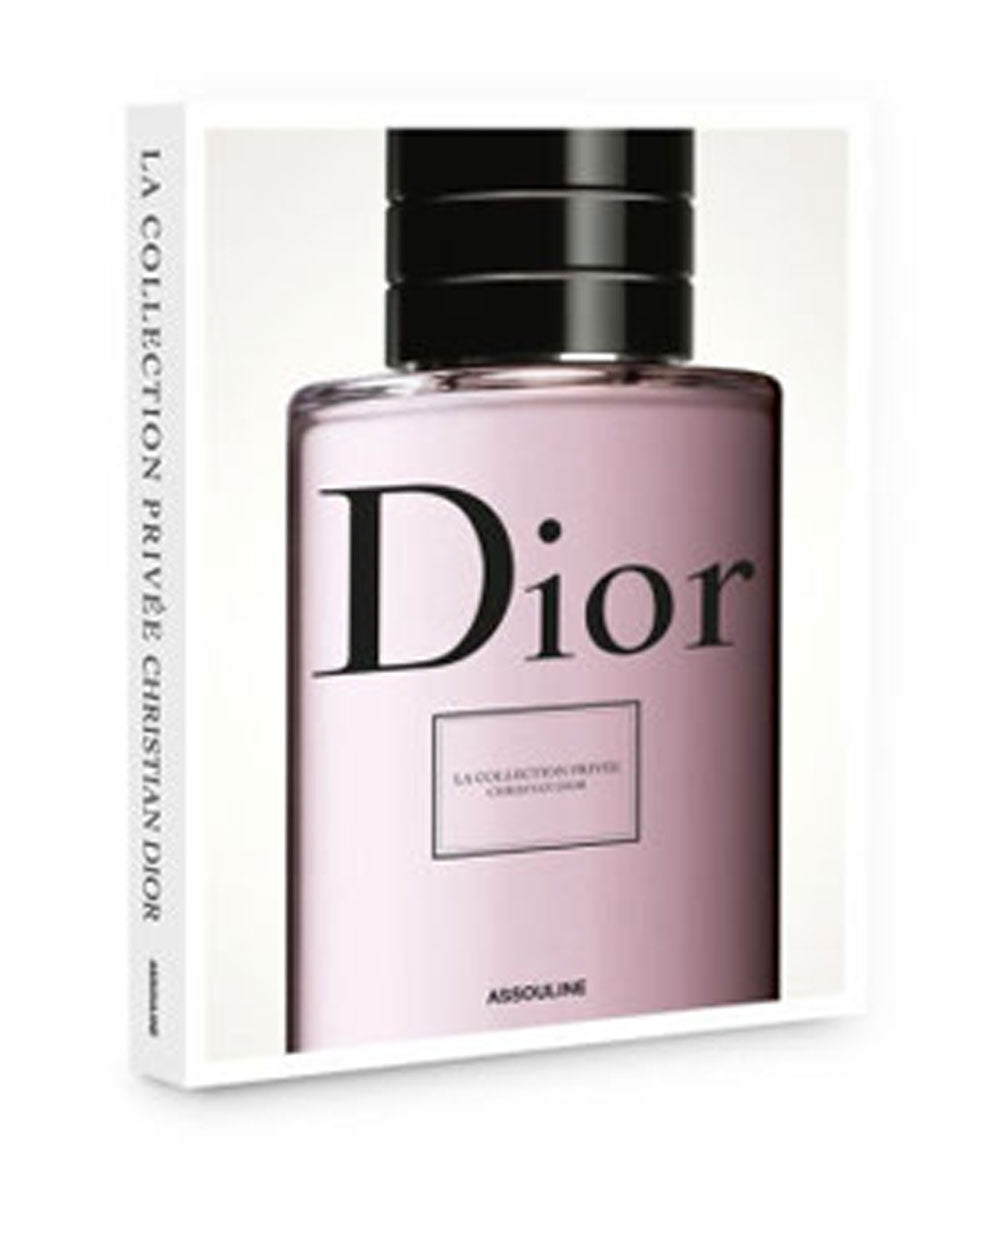 Dior Privee Parfum by Elisabeth de Feydeau